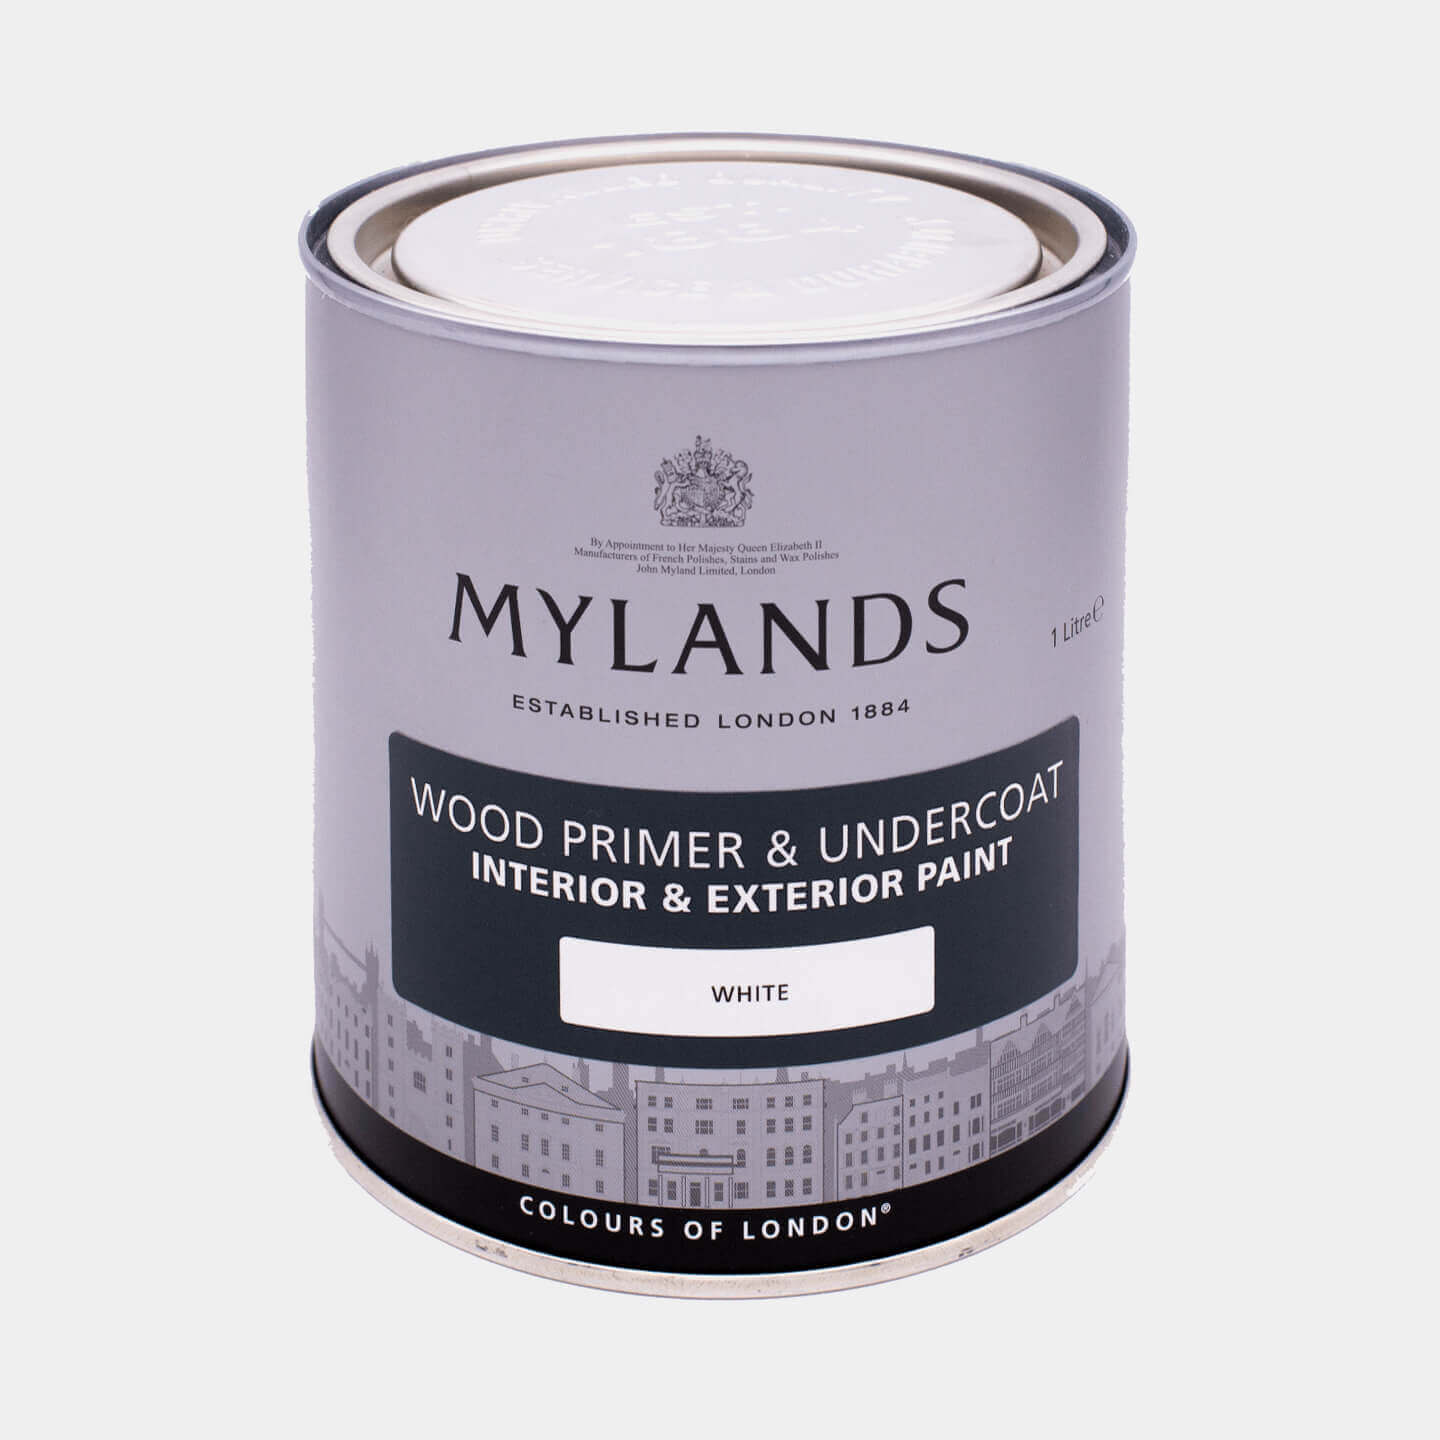 Mylands Wood Primer & Undercoat - White, 5L